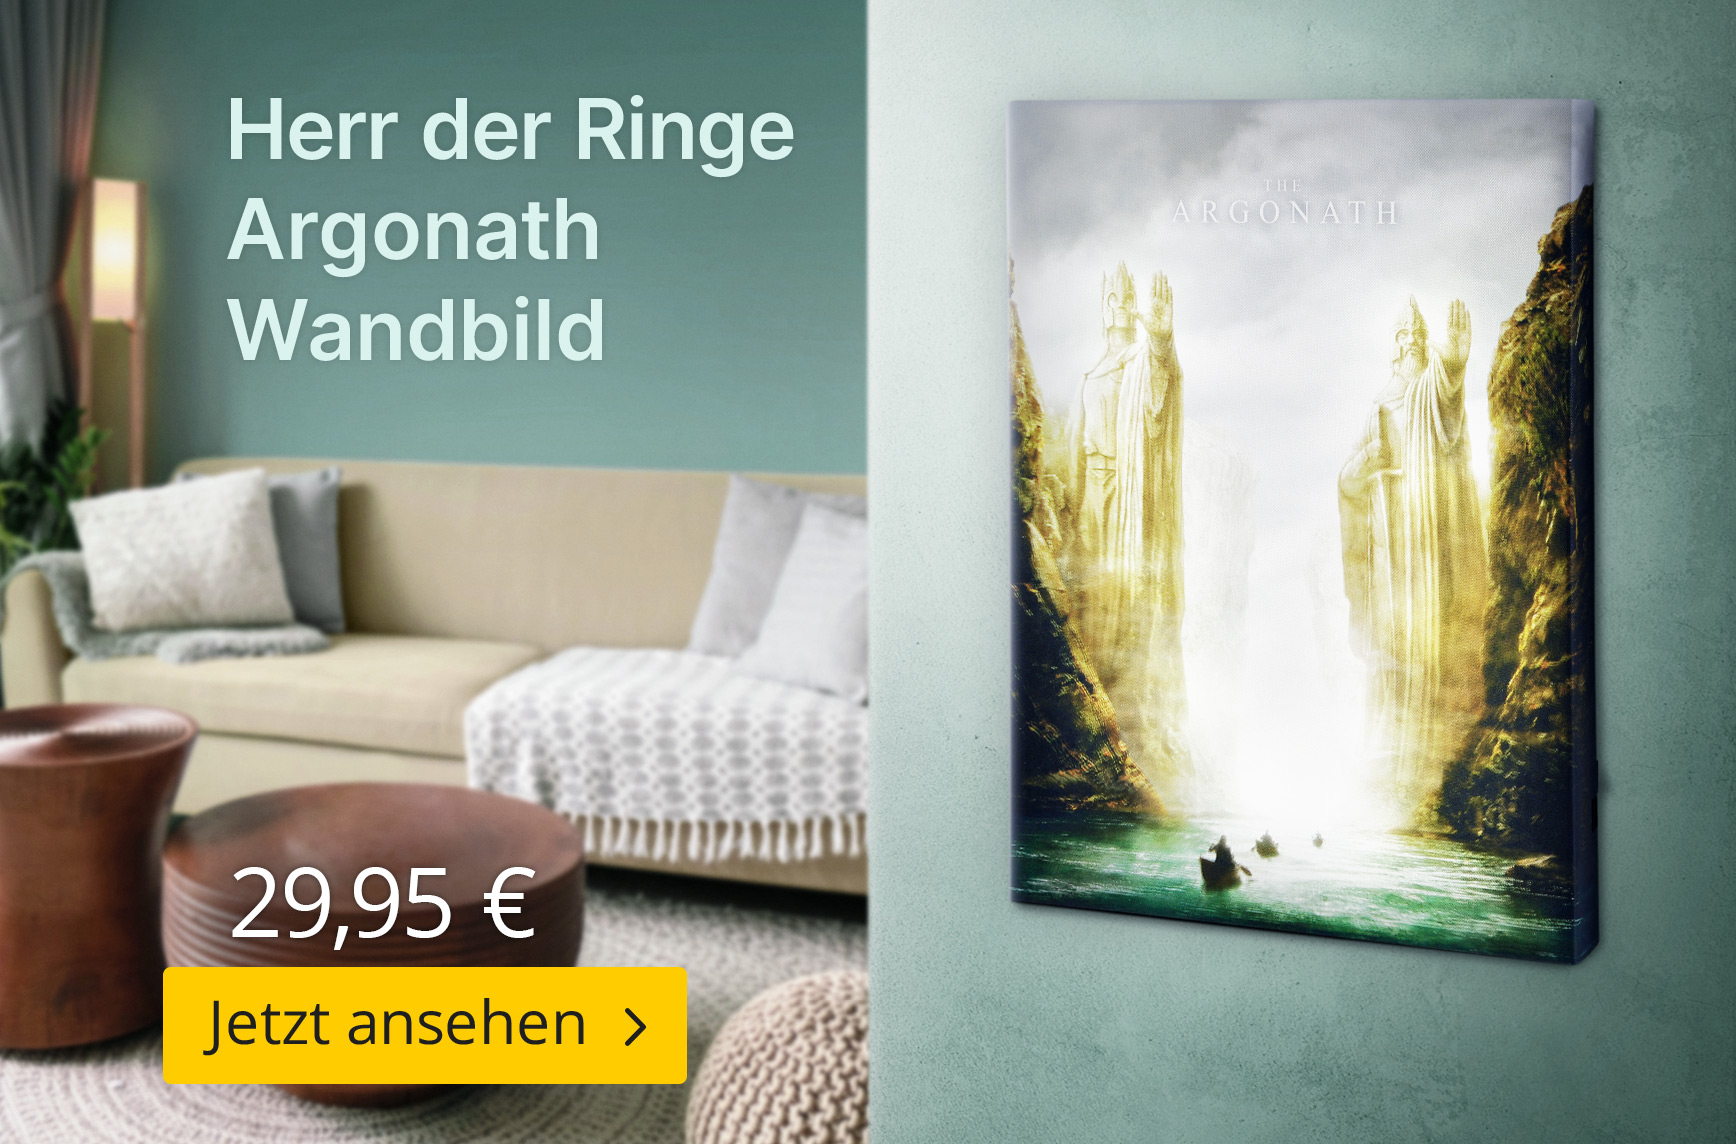 Herr der Ringe Argonath Wandbild mit Licht - 29,95€